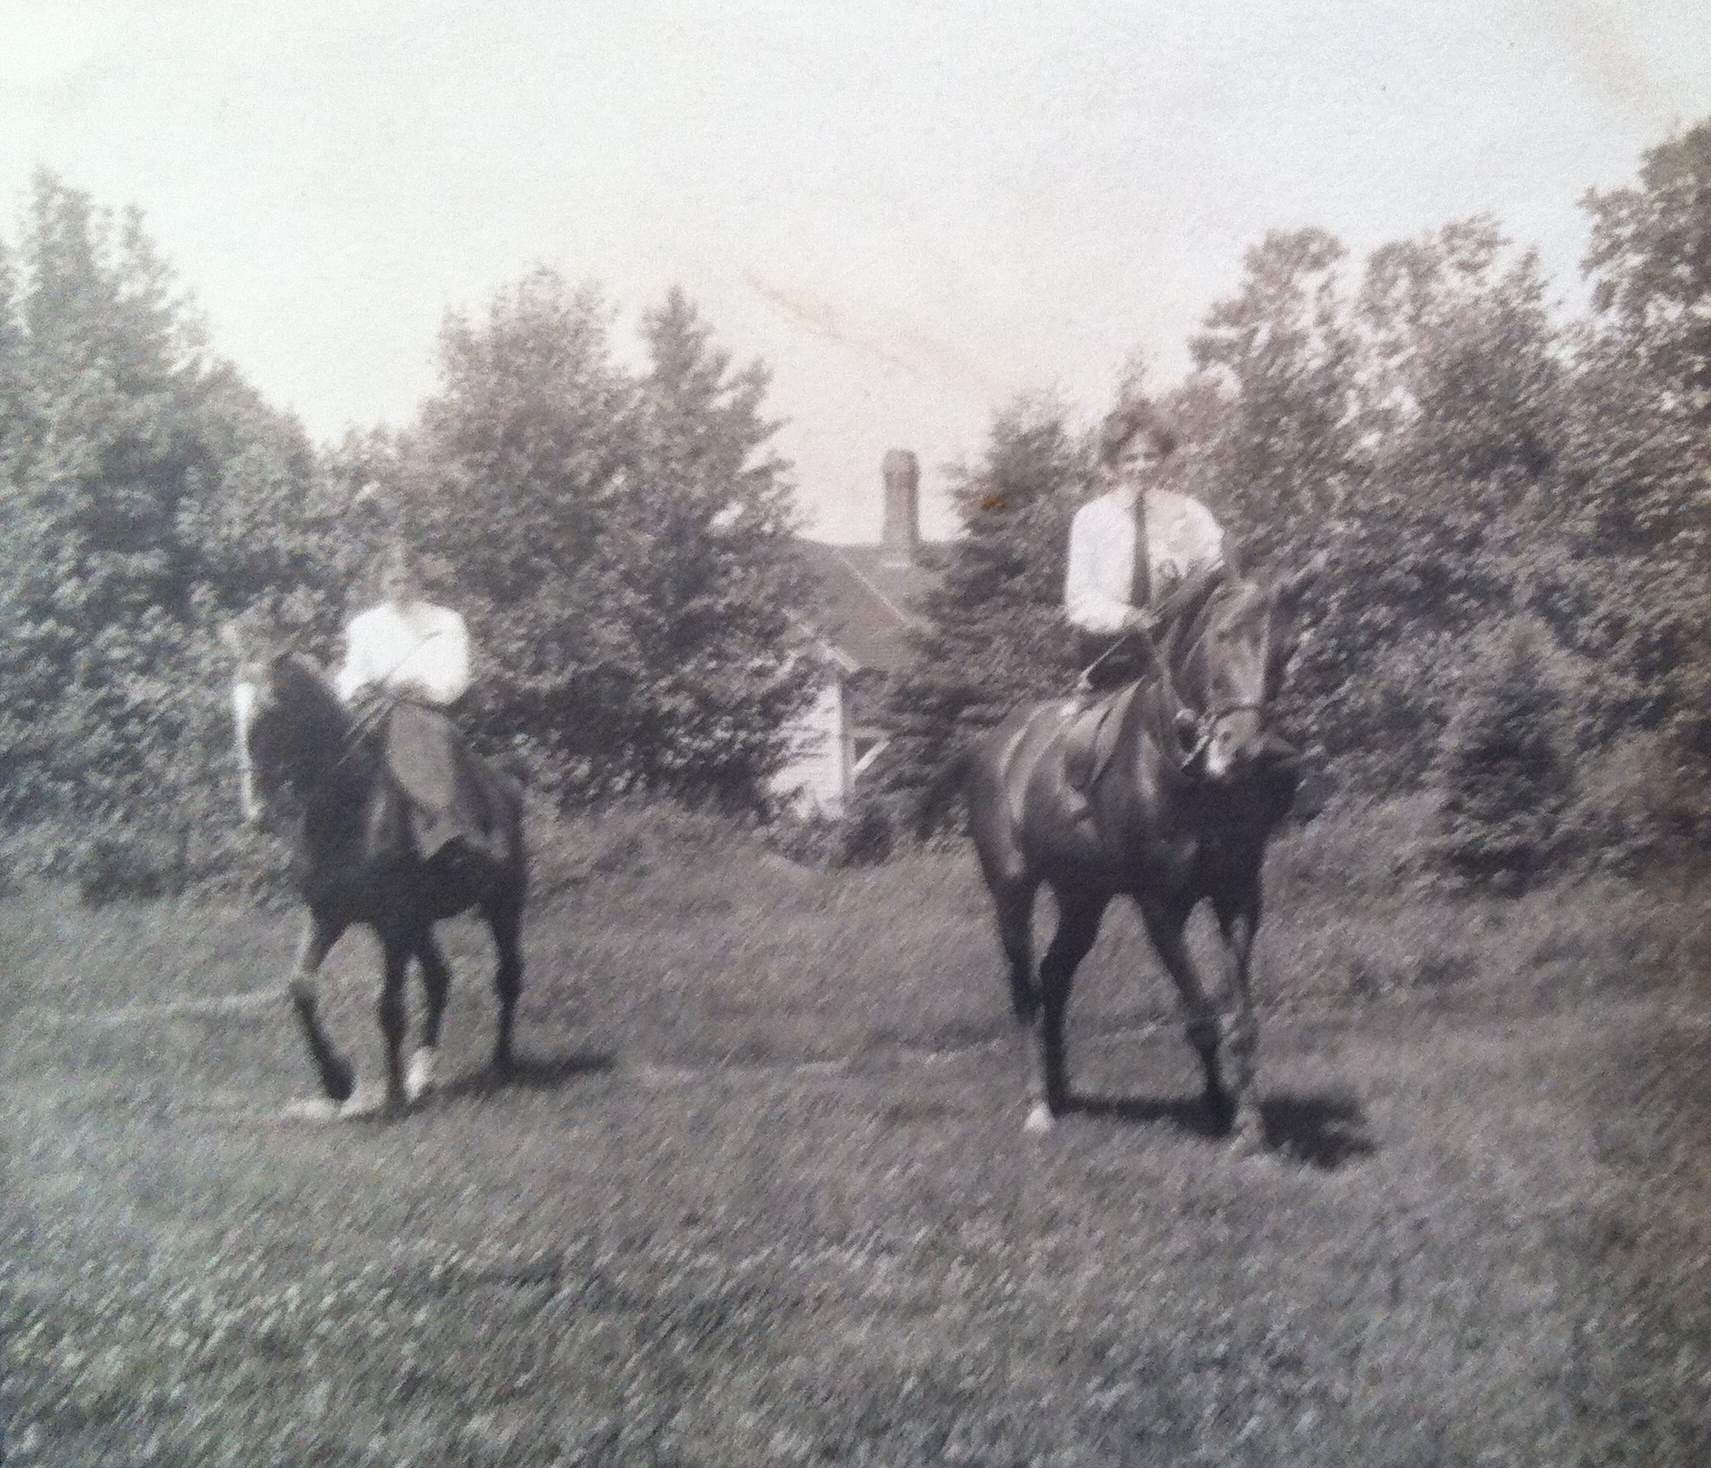 Deux cavalières montent à cheval, sur un terrain bordé d’arbres.